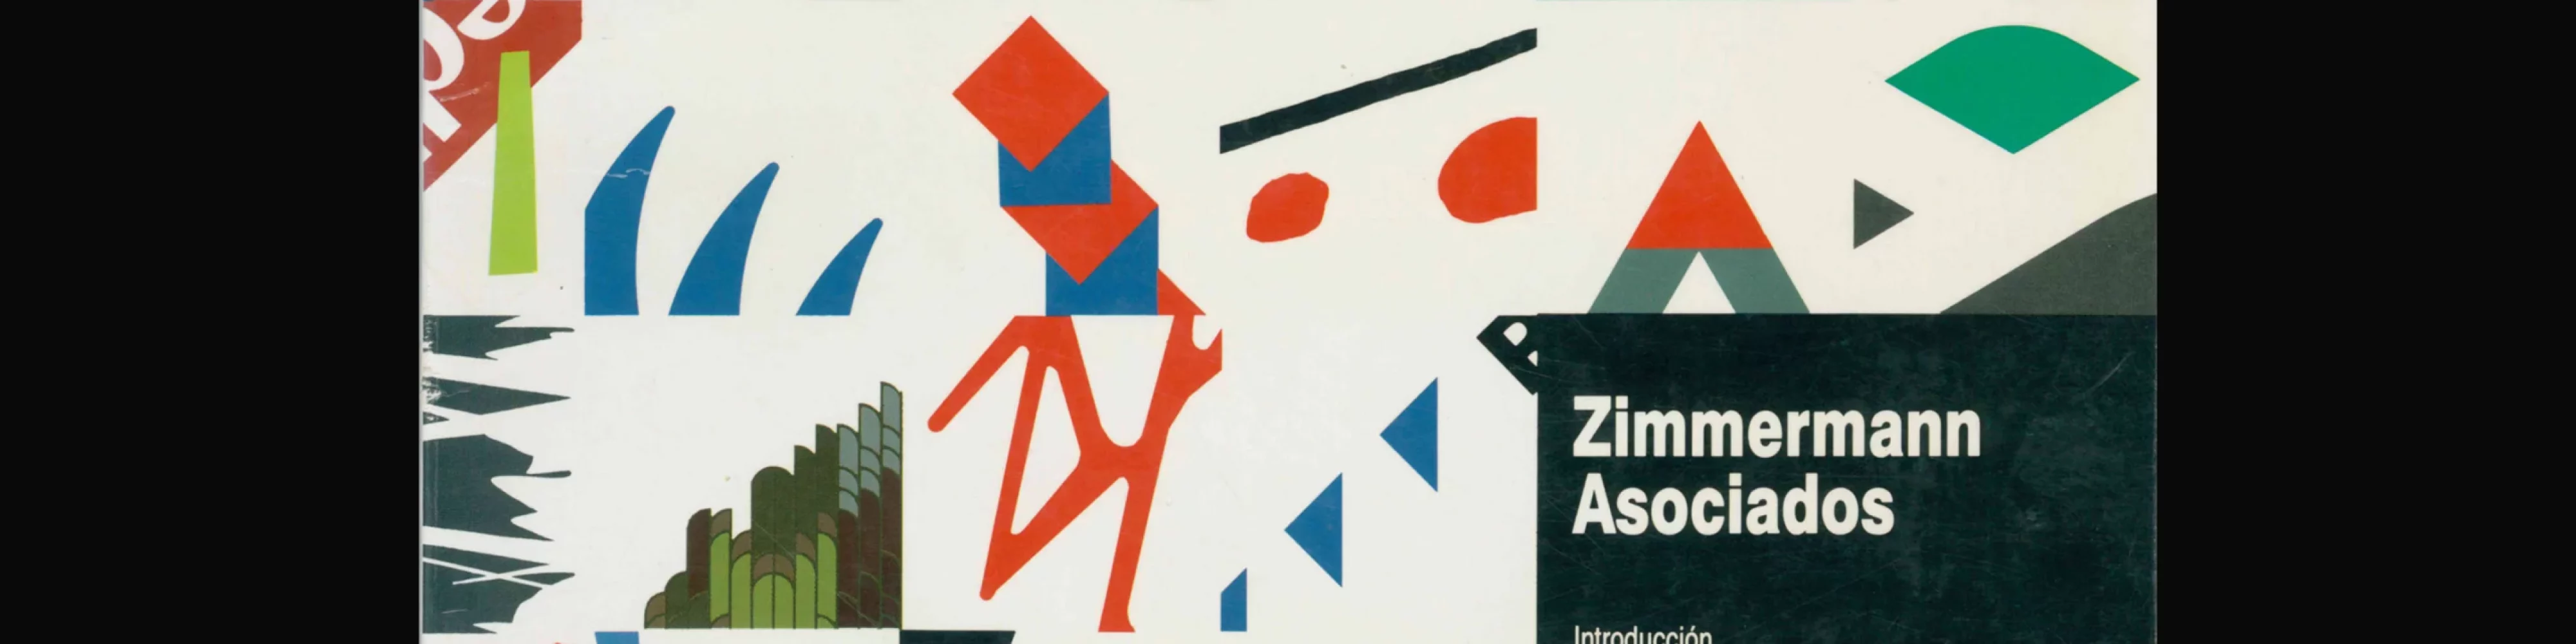 Zimmermann asociados (Monographs on Contemporary Design), 1993